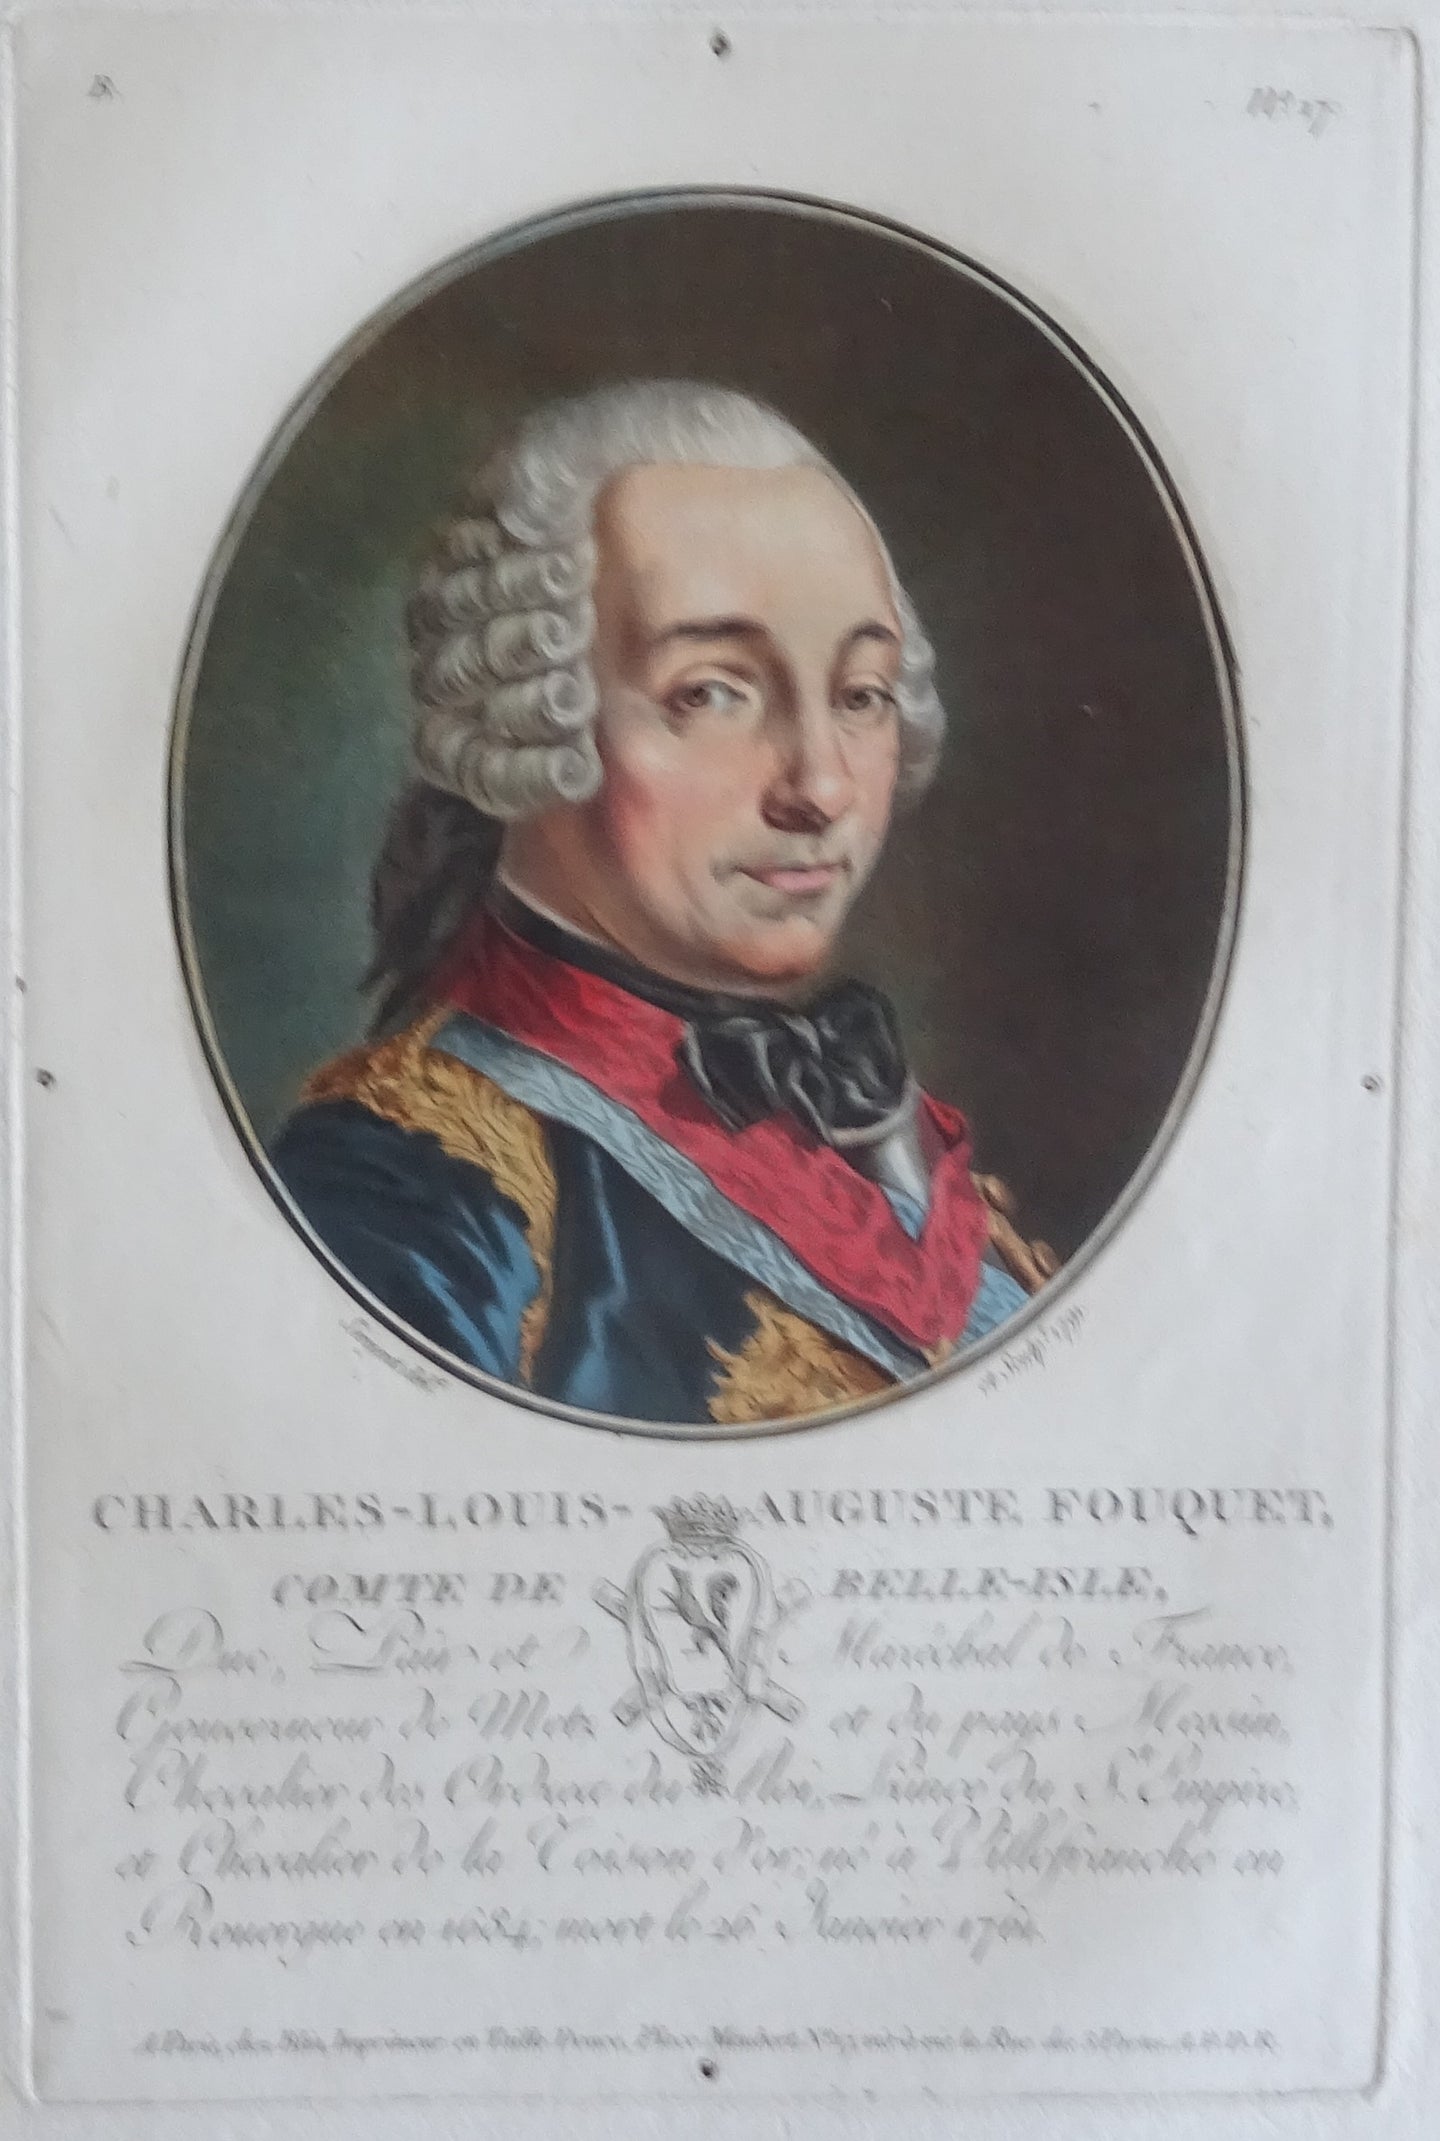 Charles-Louis-Auguste Fouquet, Comte de Belle-Isle